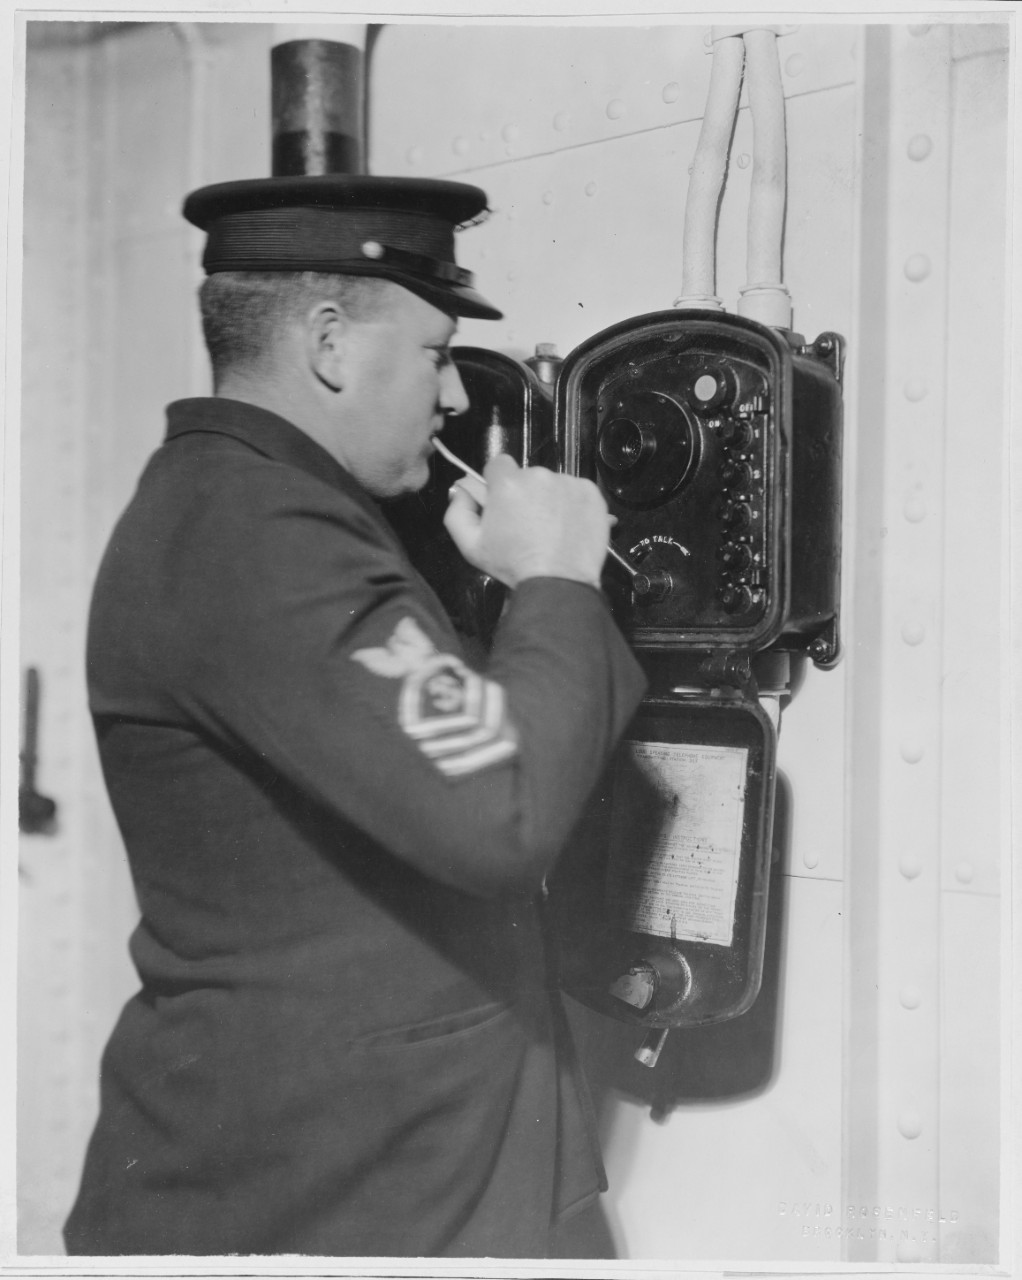 Loudspeaker call system